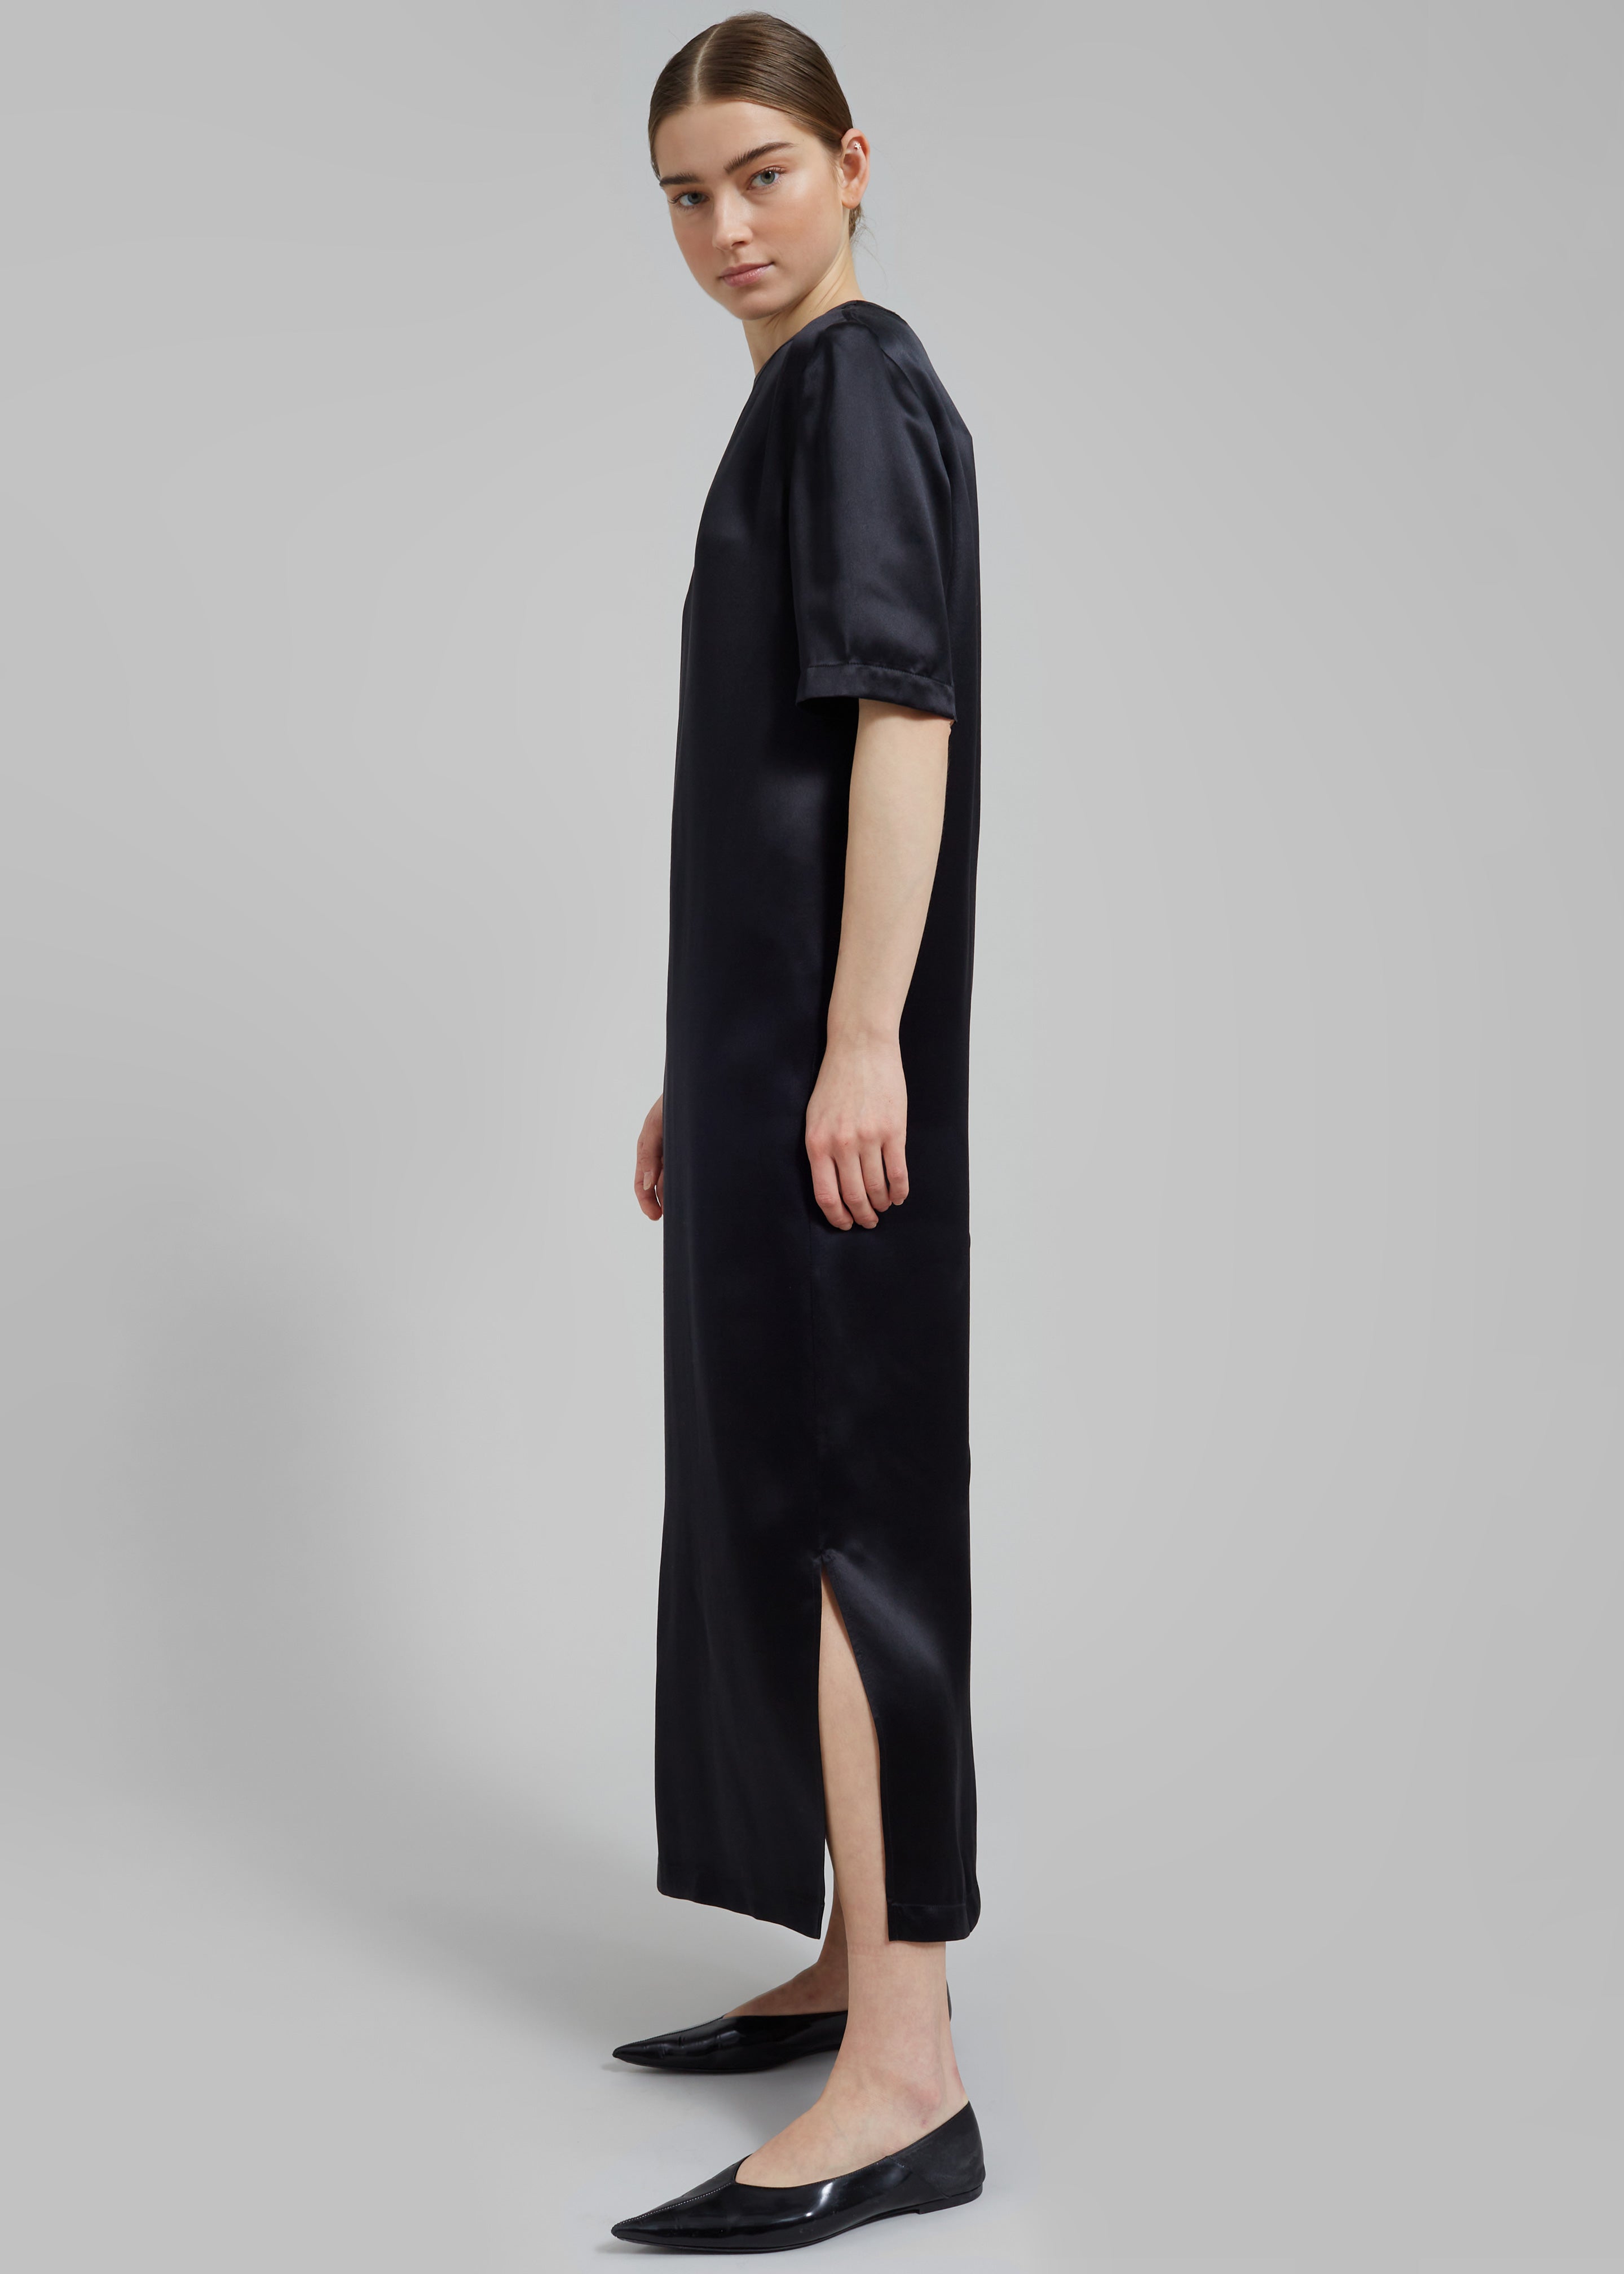 Loulou Studio Tuga Satin T-Shirt Dress - Black - 2